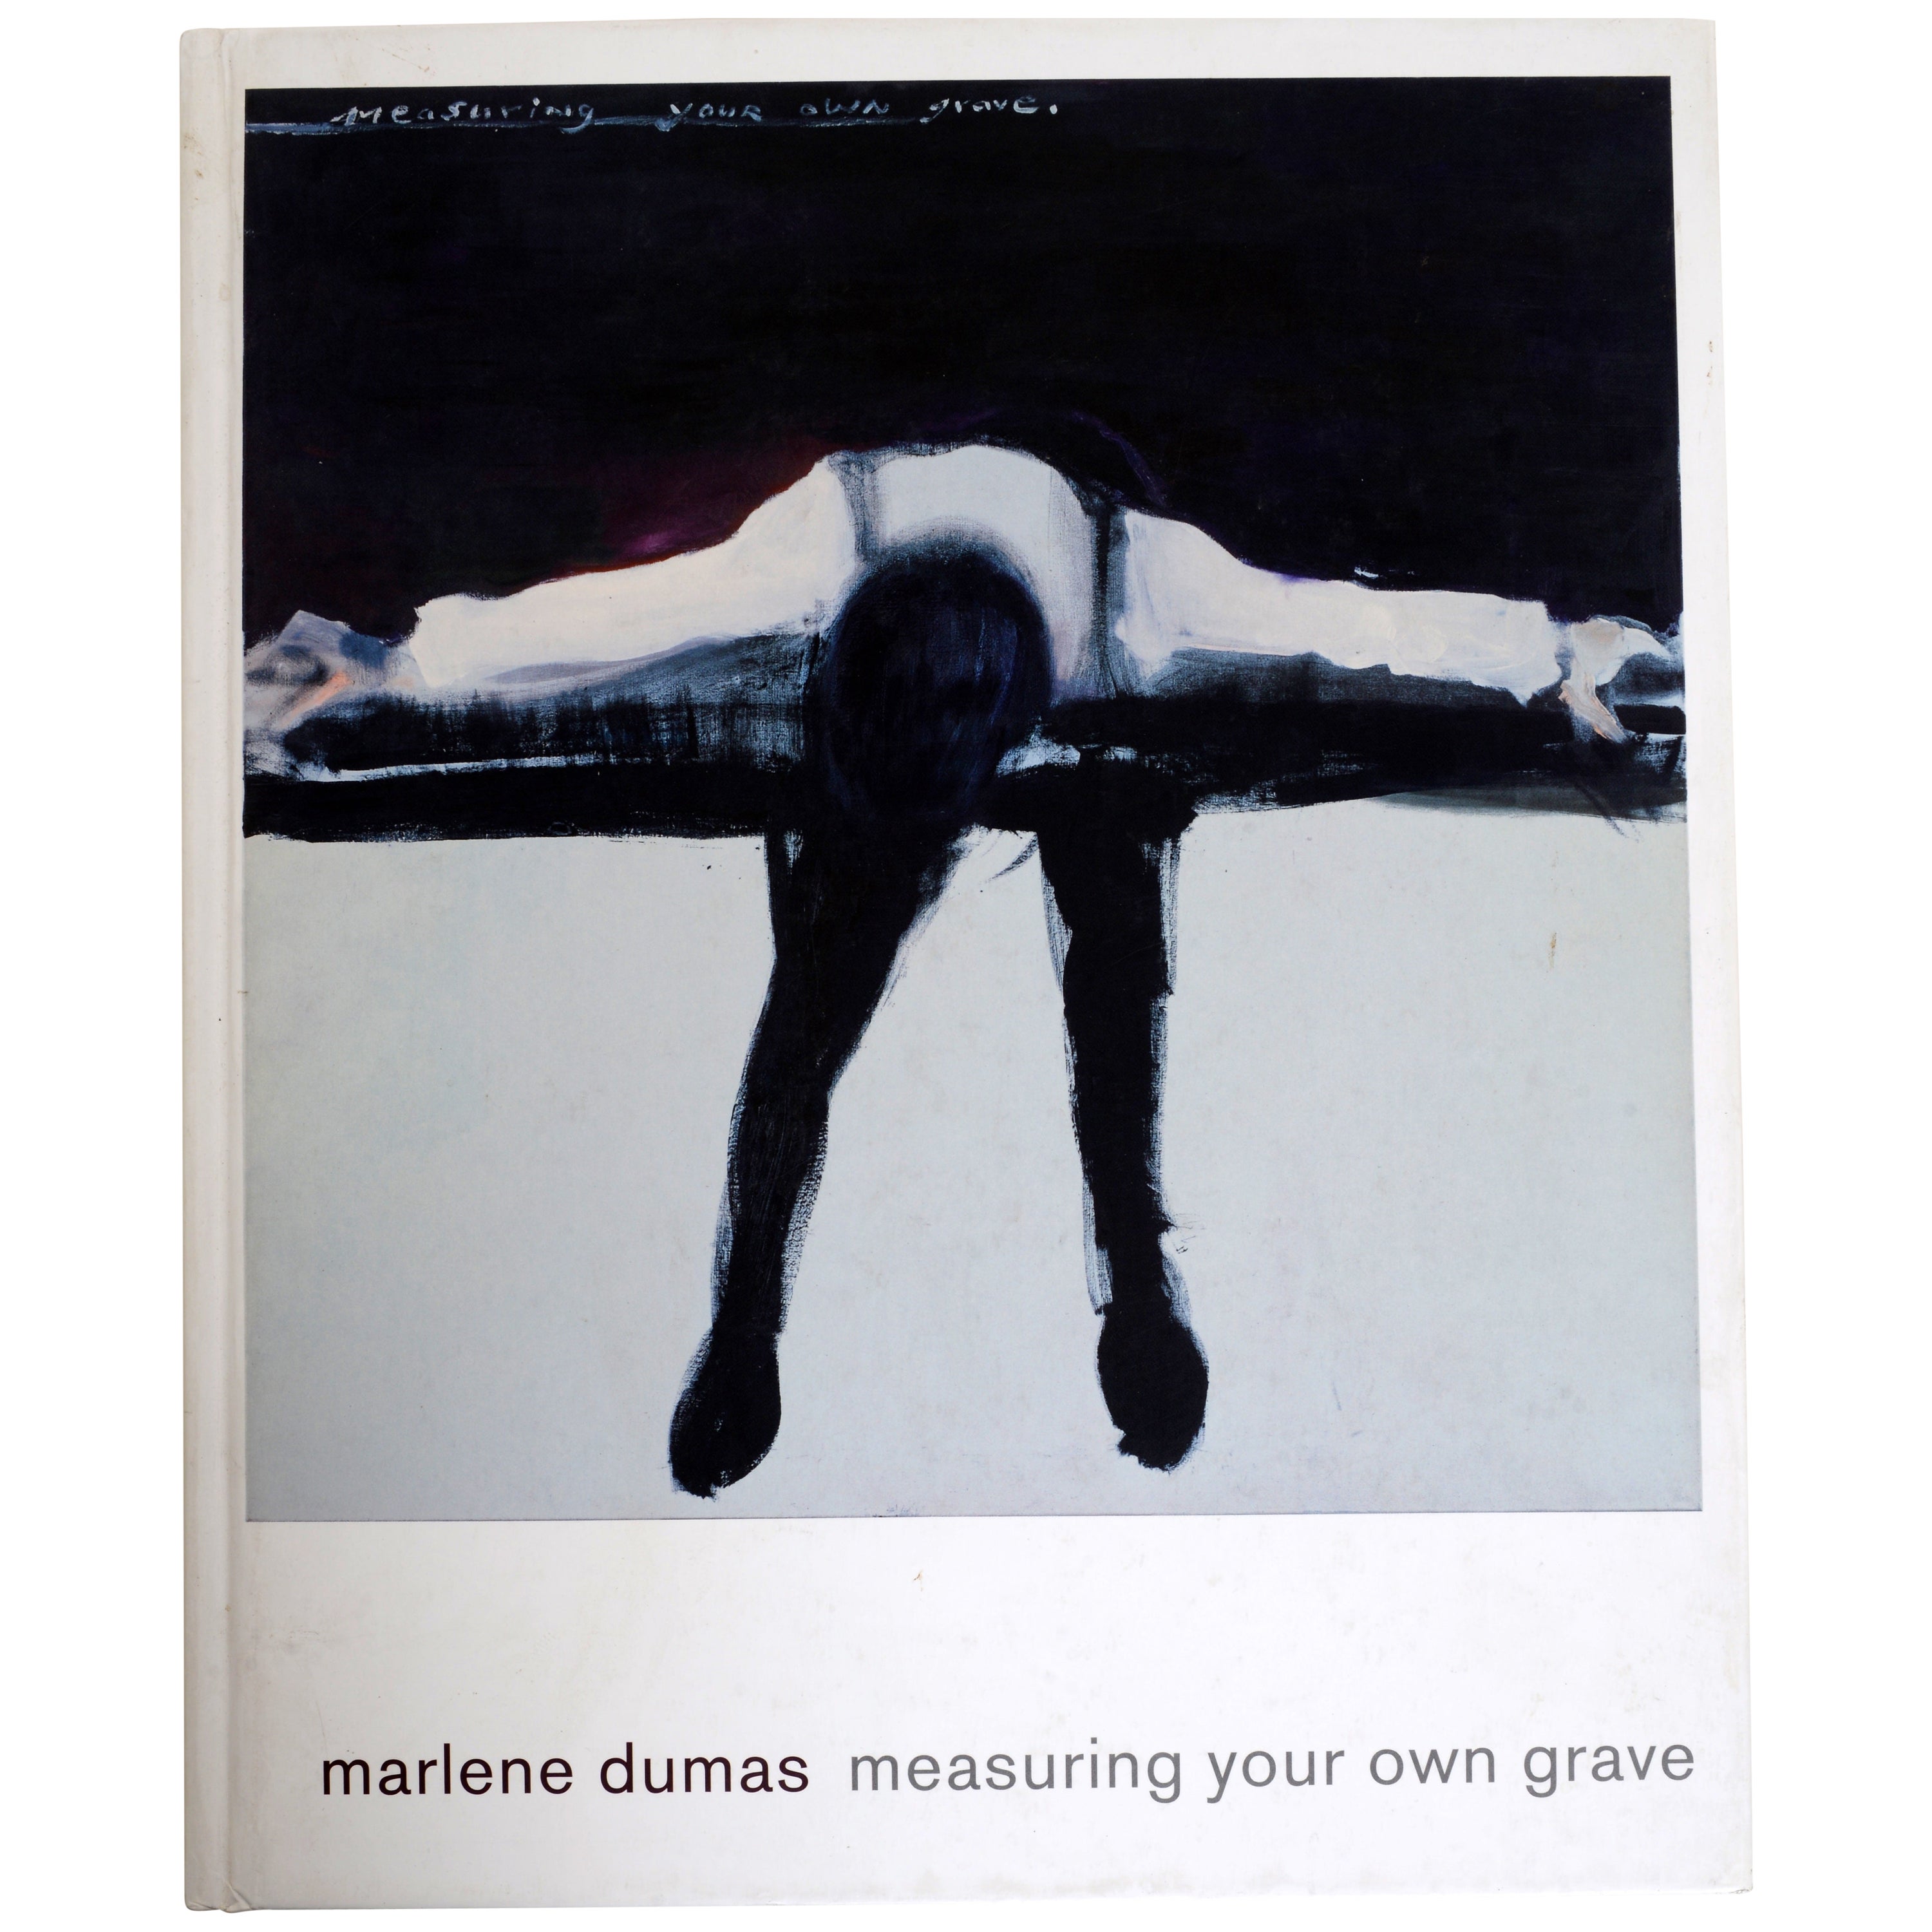 Marlene Dumas Measuring Your Own Grave von Marlene Dumas, 1st Ed Exh. Katalog